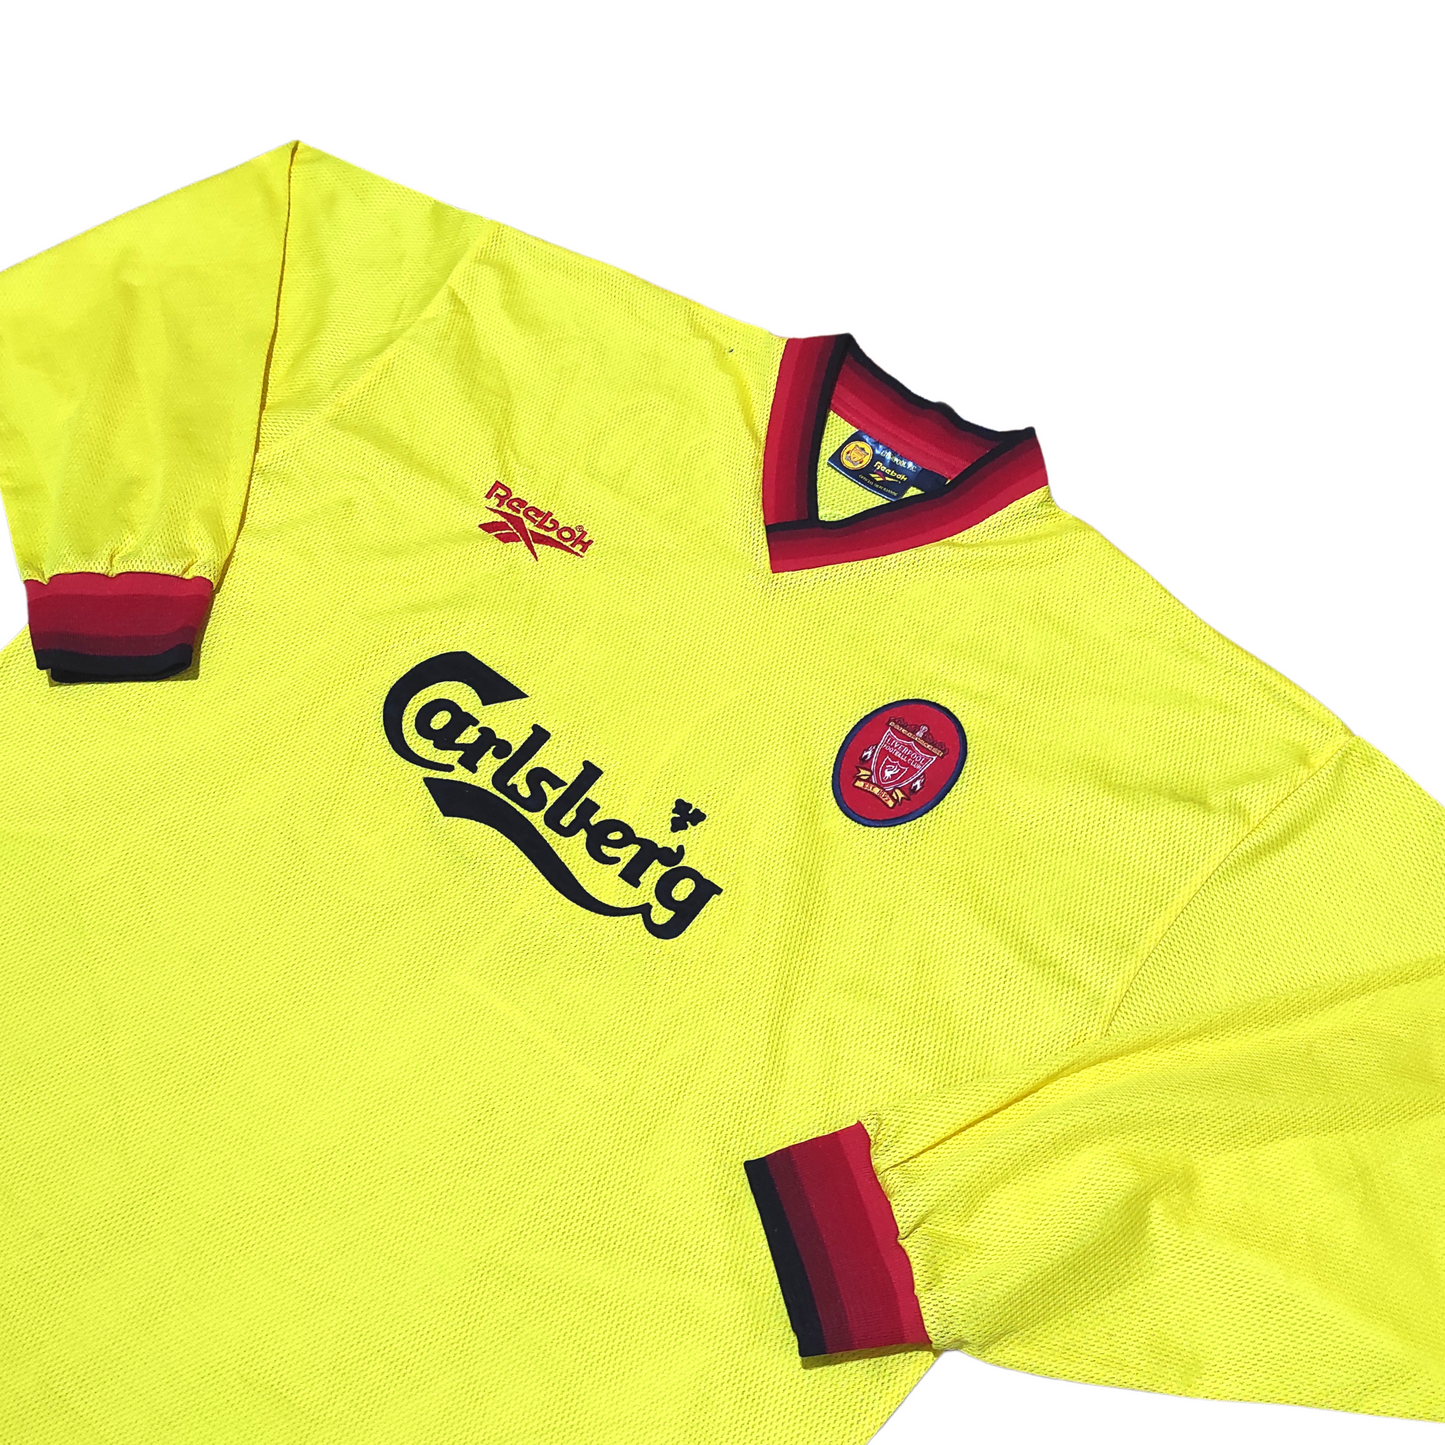 Liverpool Away L/S Shirt 1997-1999 Gerrard (XL)